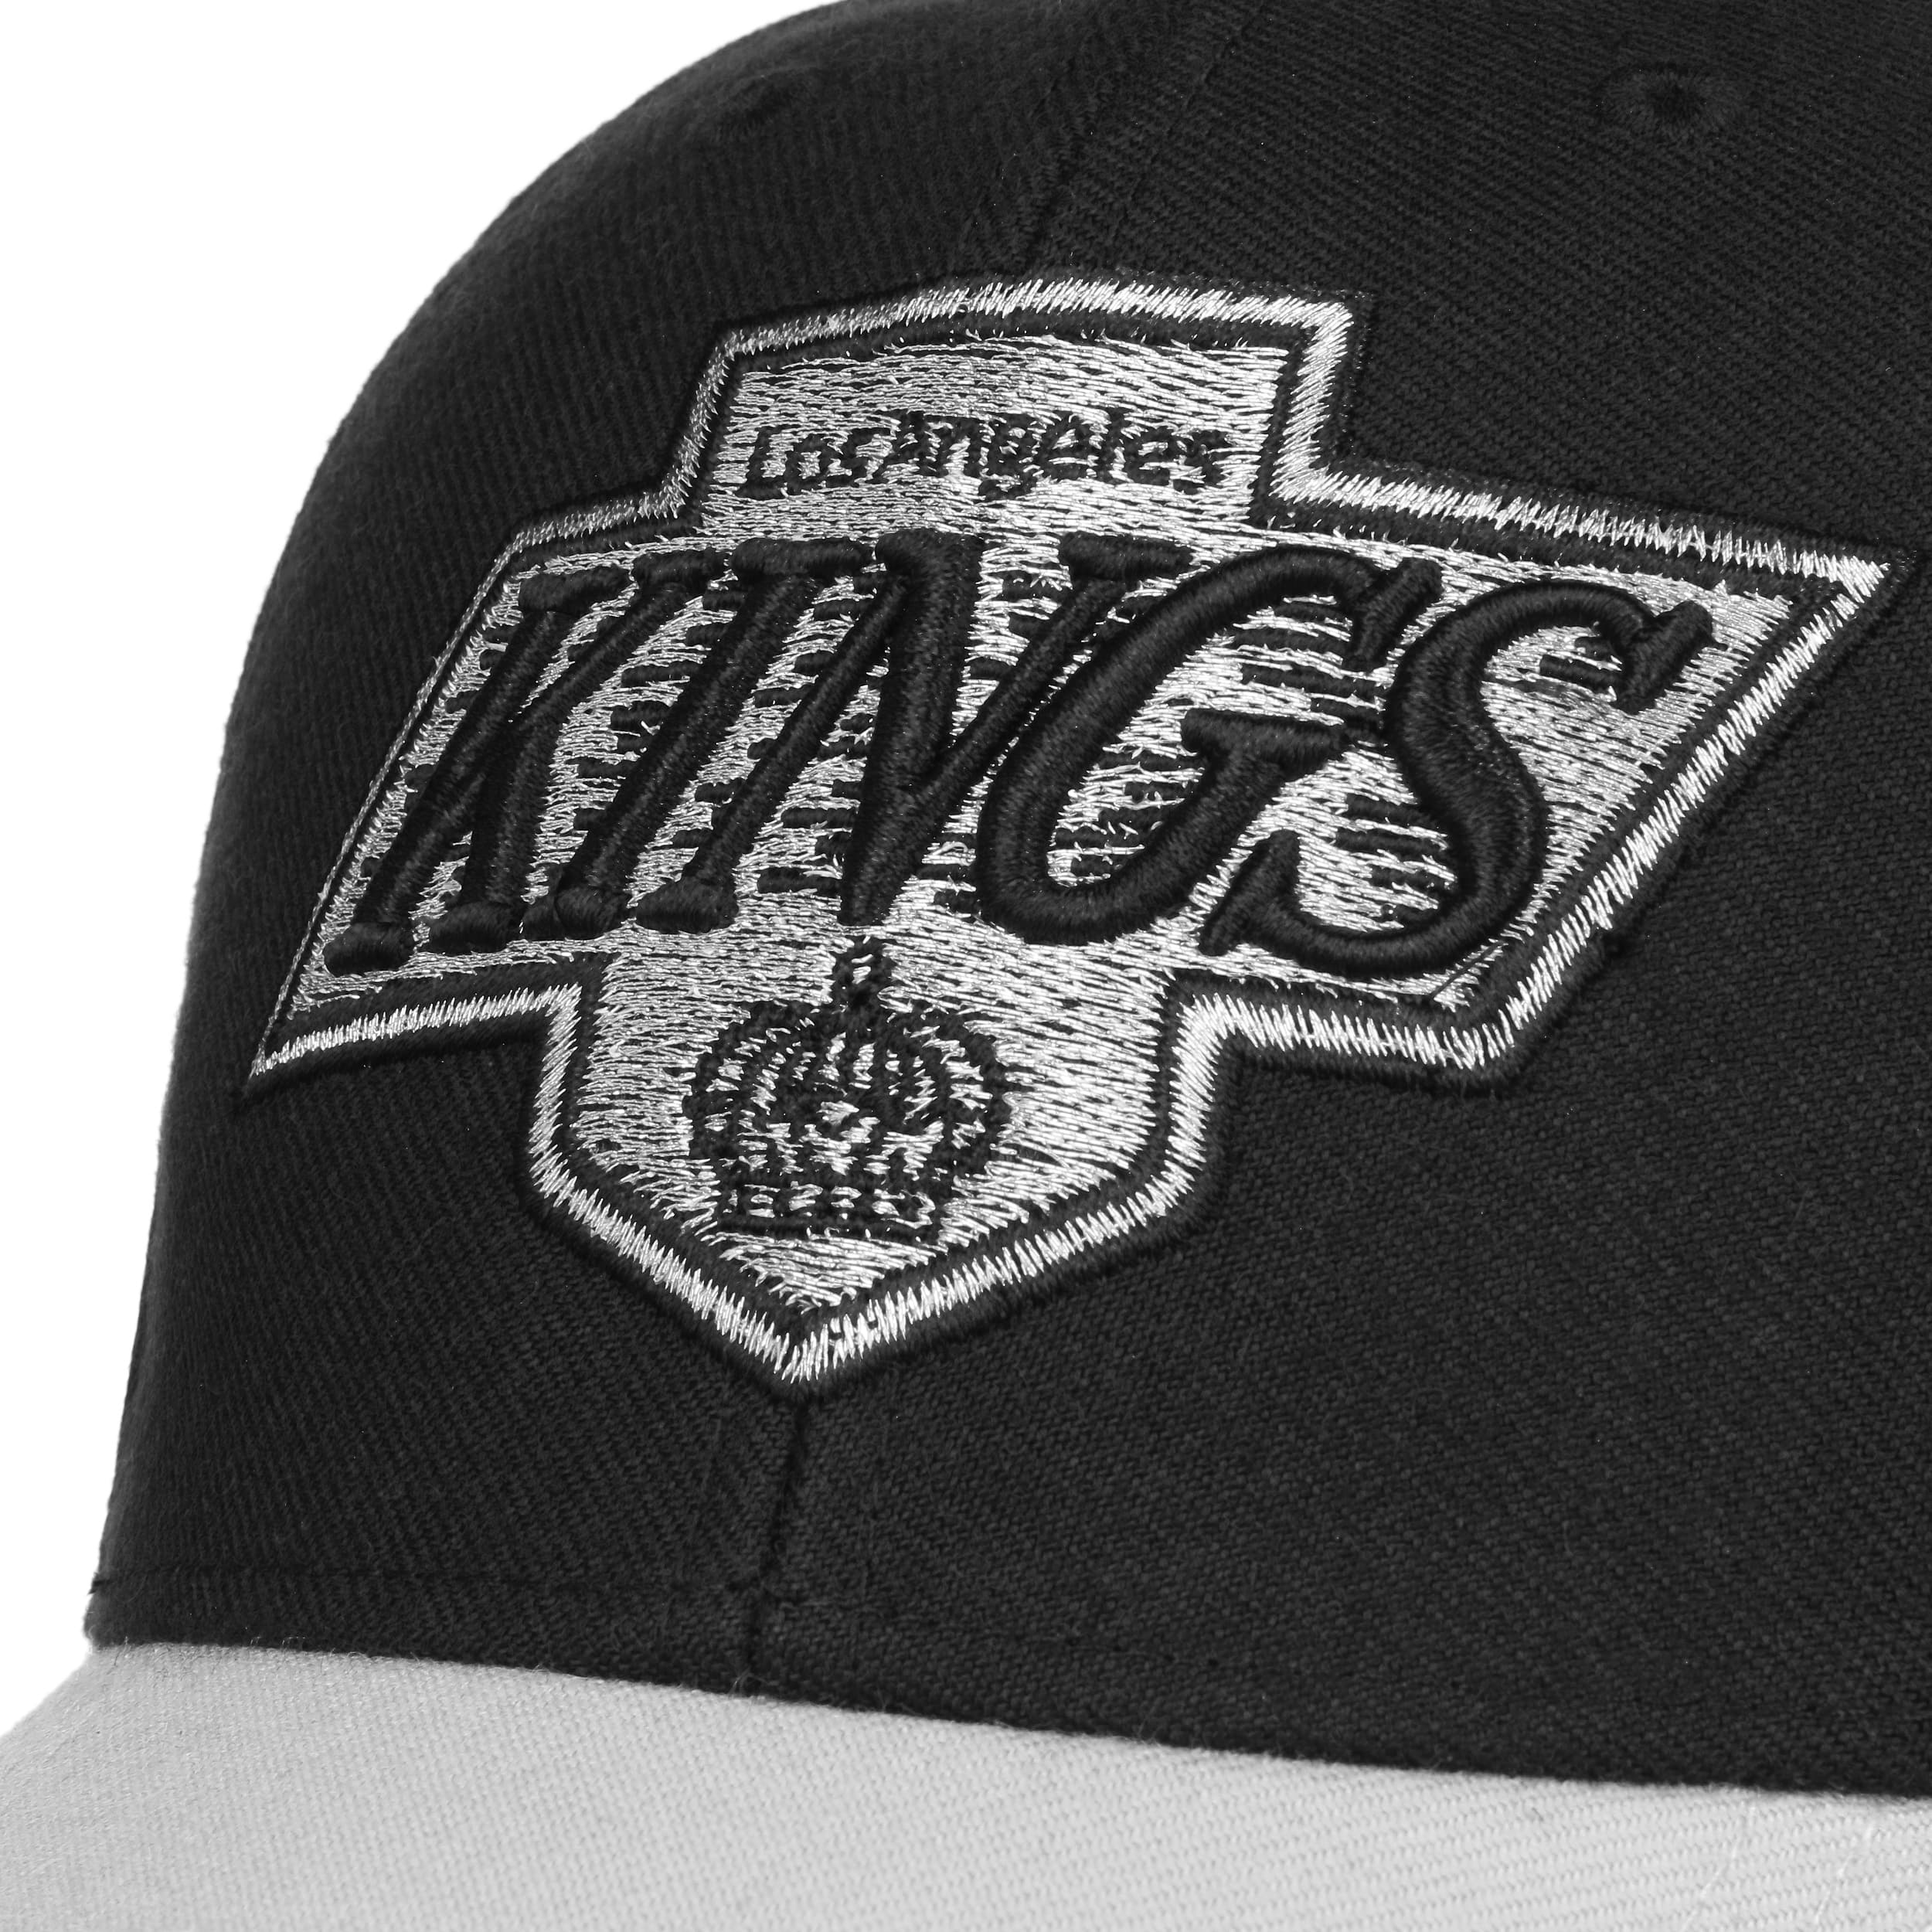 Los Angeles Kings NHL Cap